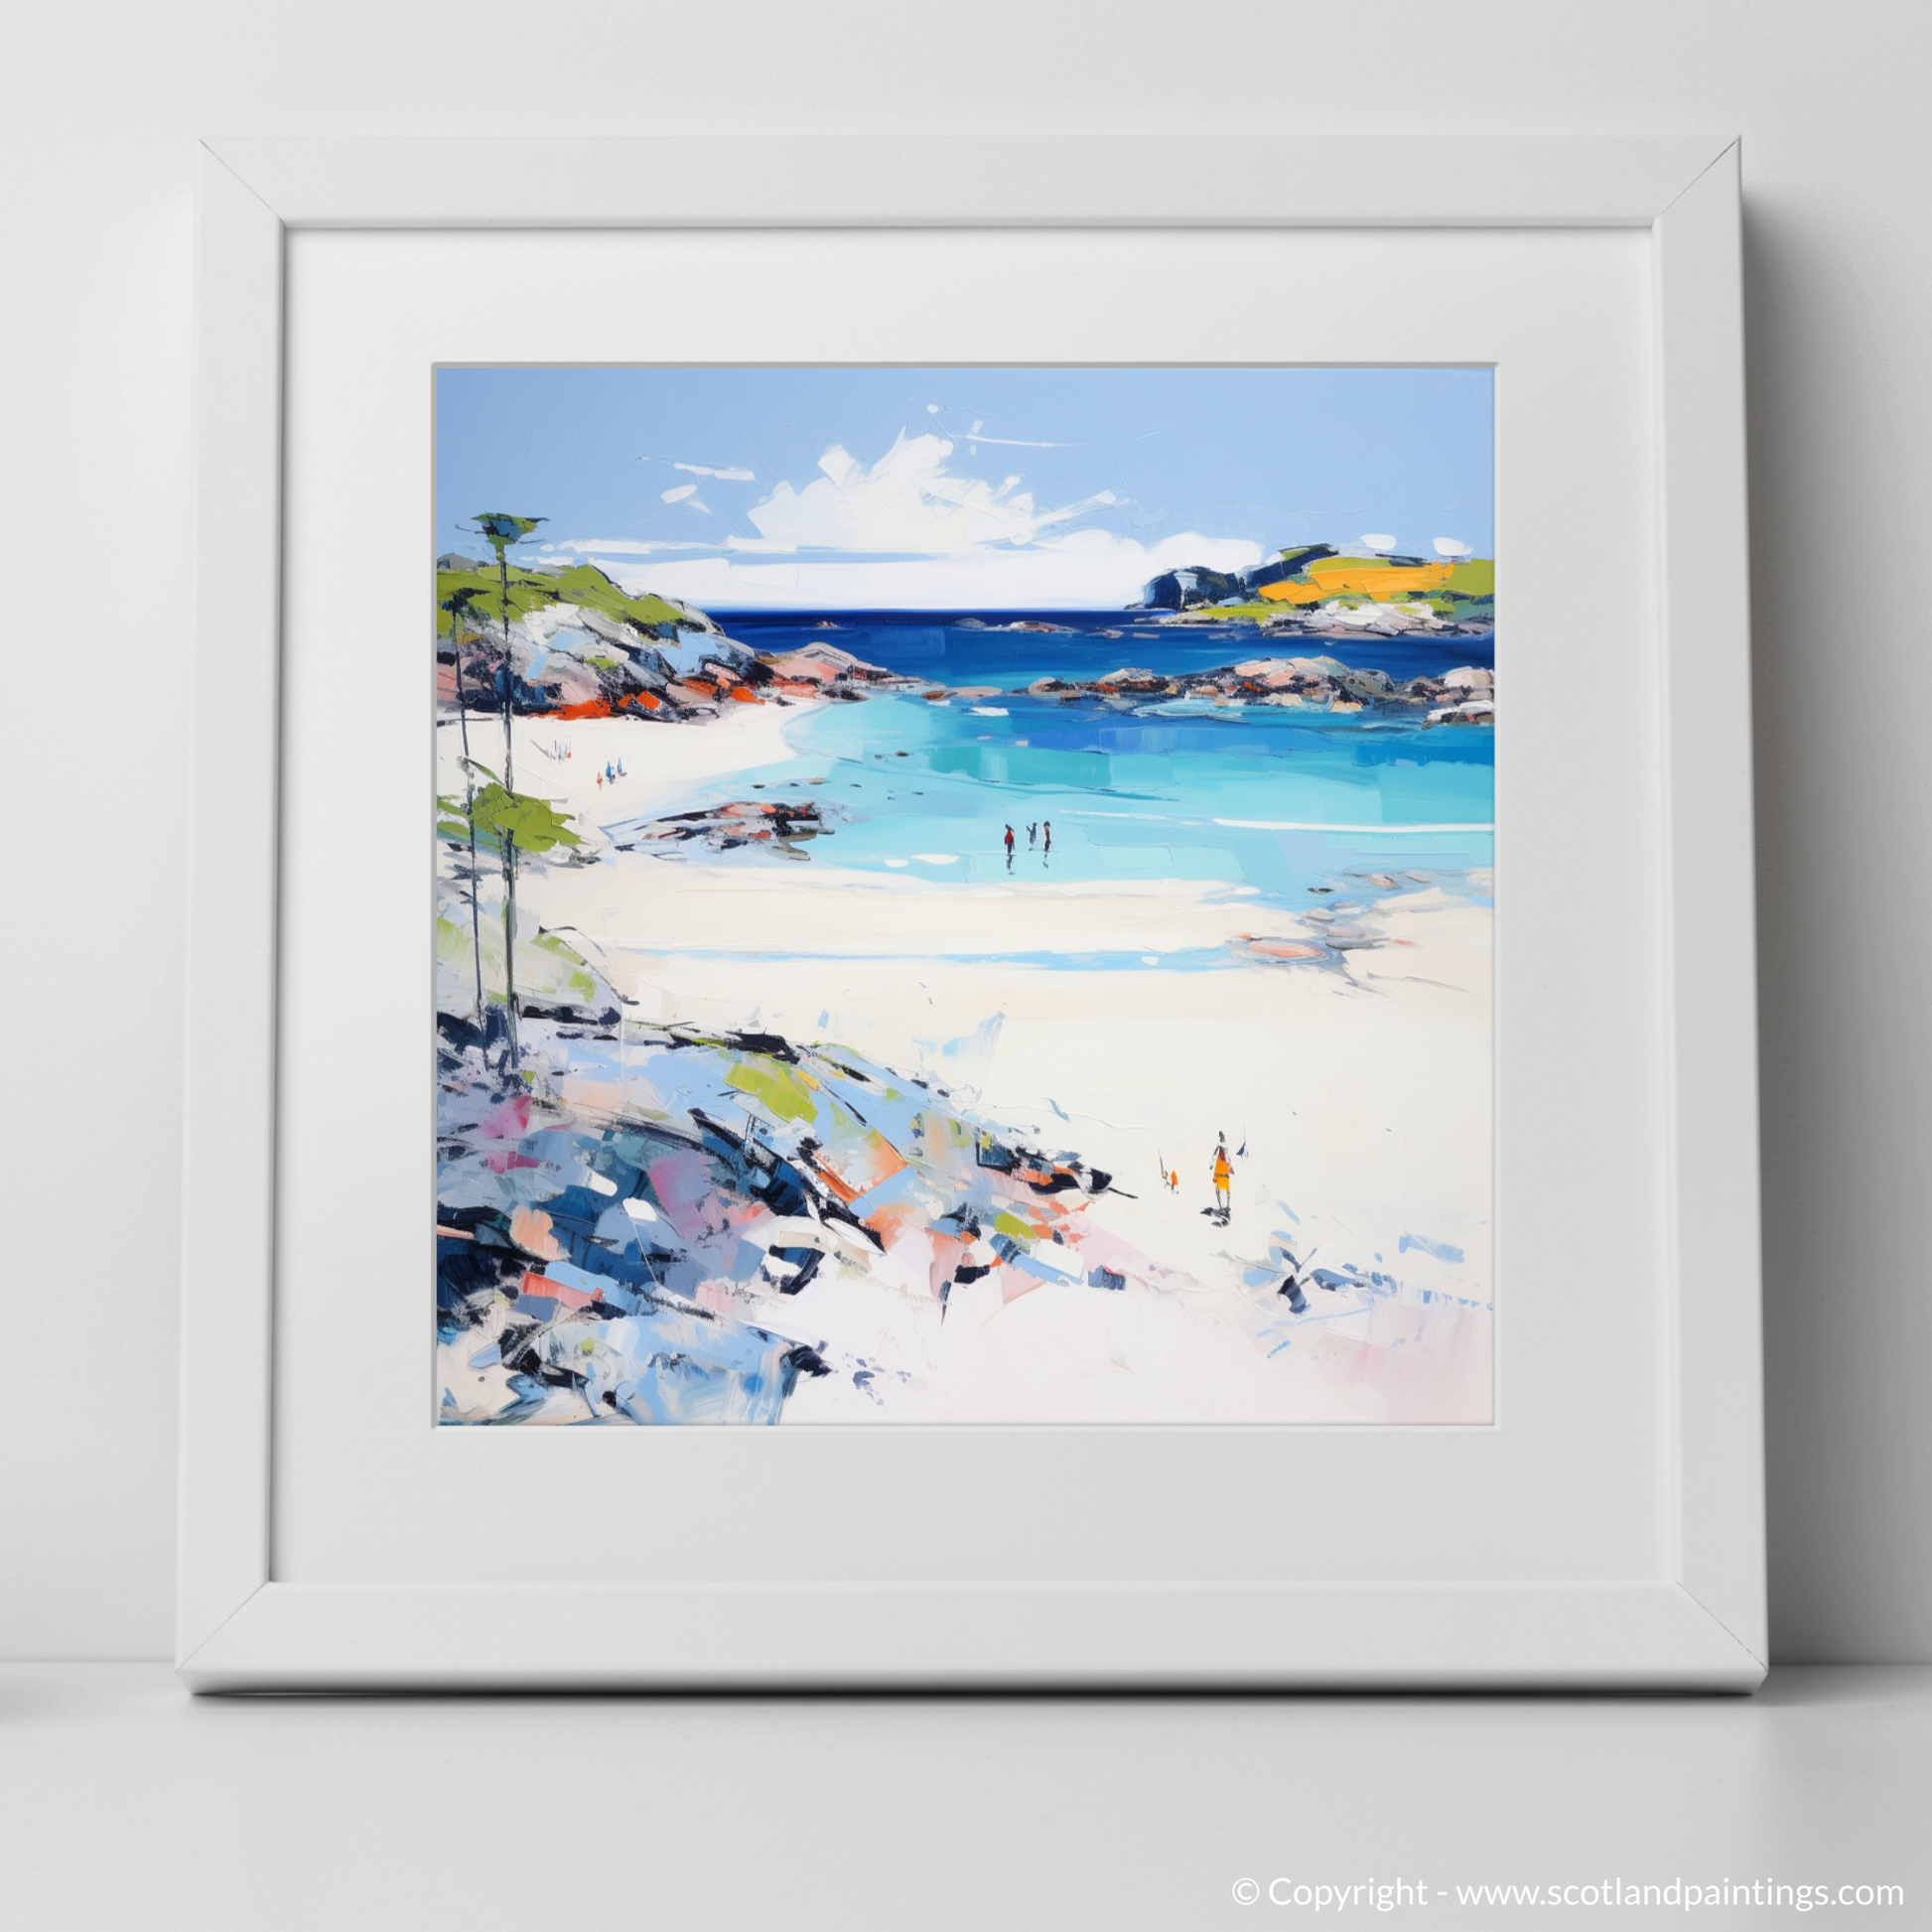 Art Print of Arisaig Beach, Arisaig in summer with a white frame